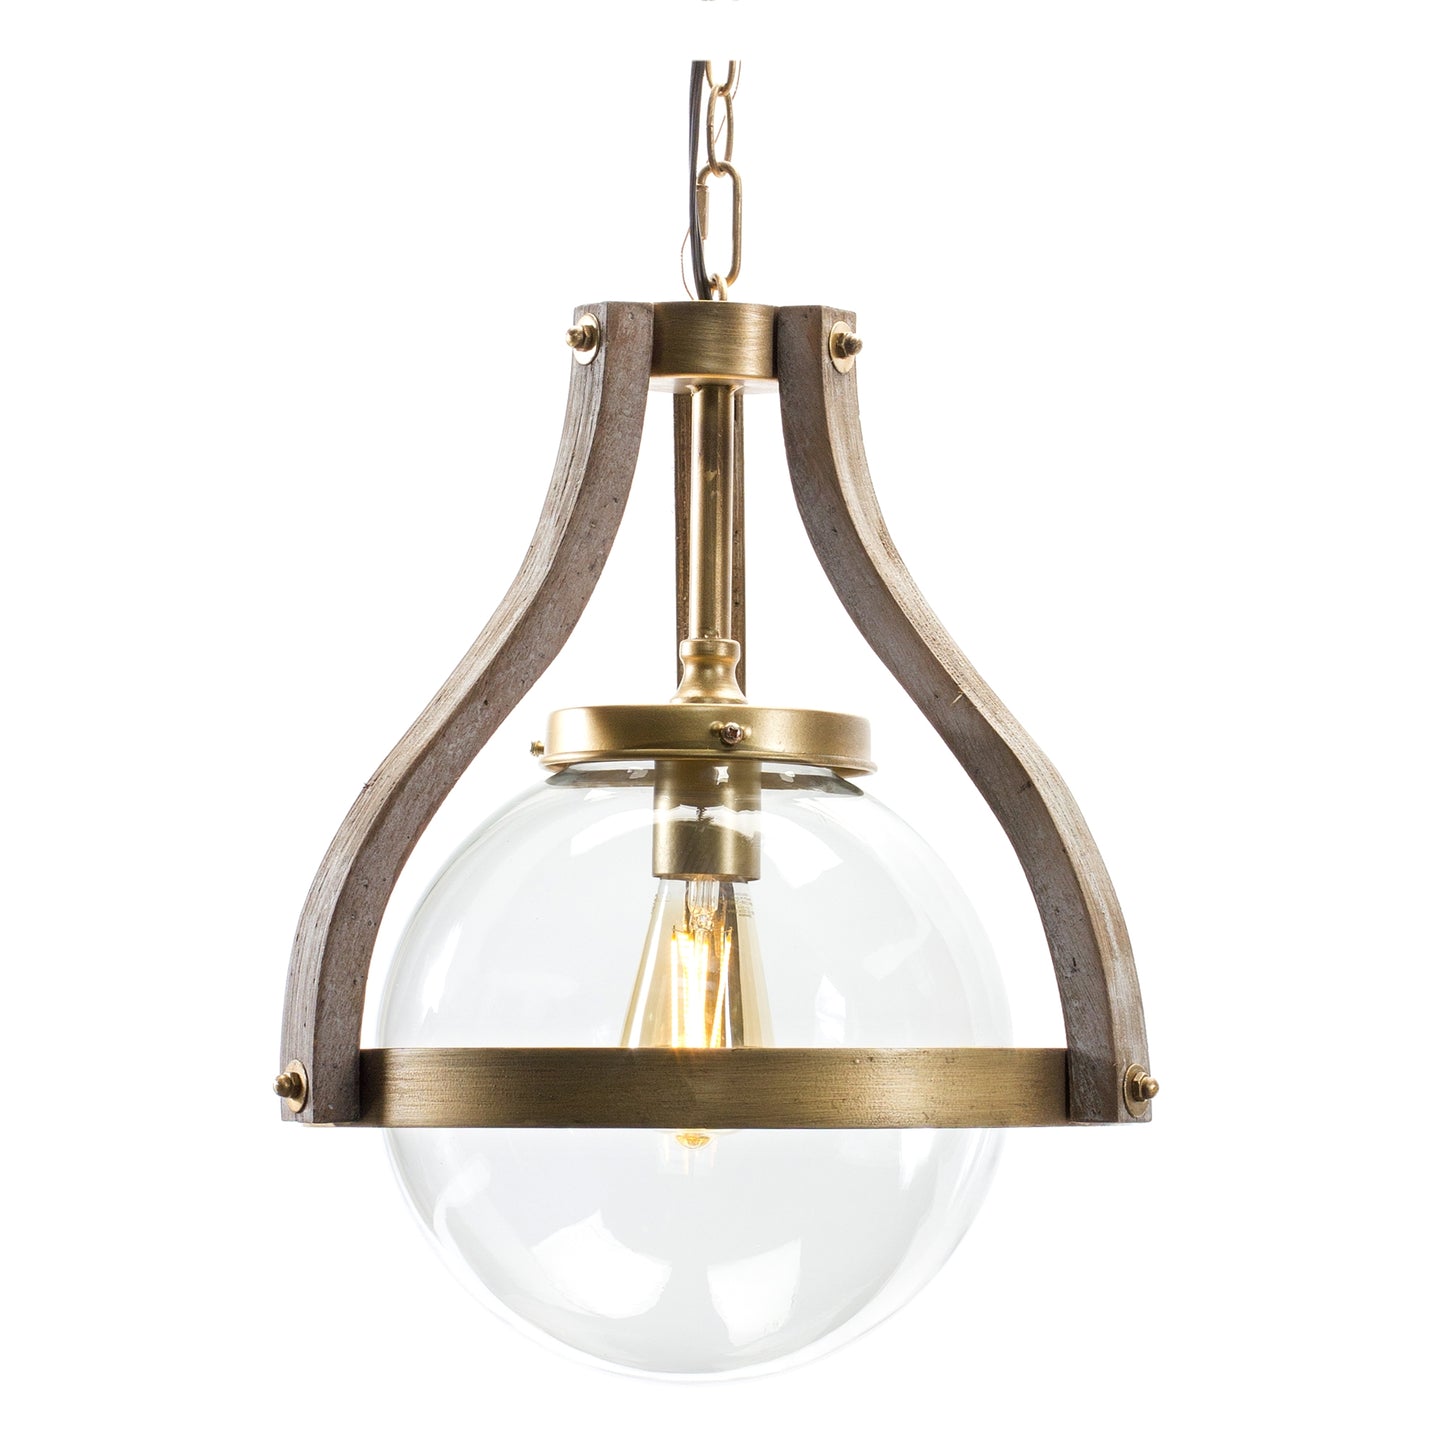 Hanging Globe Light Fixture with Fir Wood Frame 12.75"D